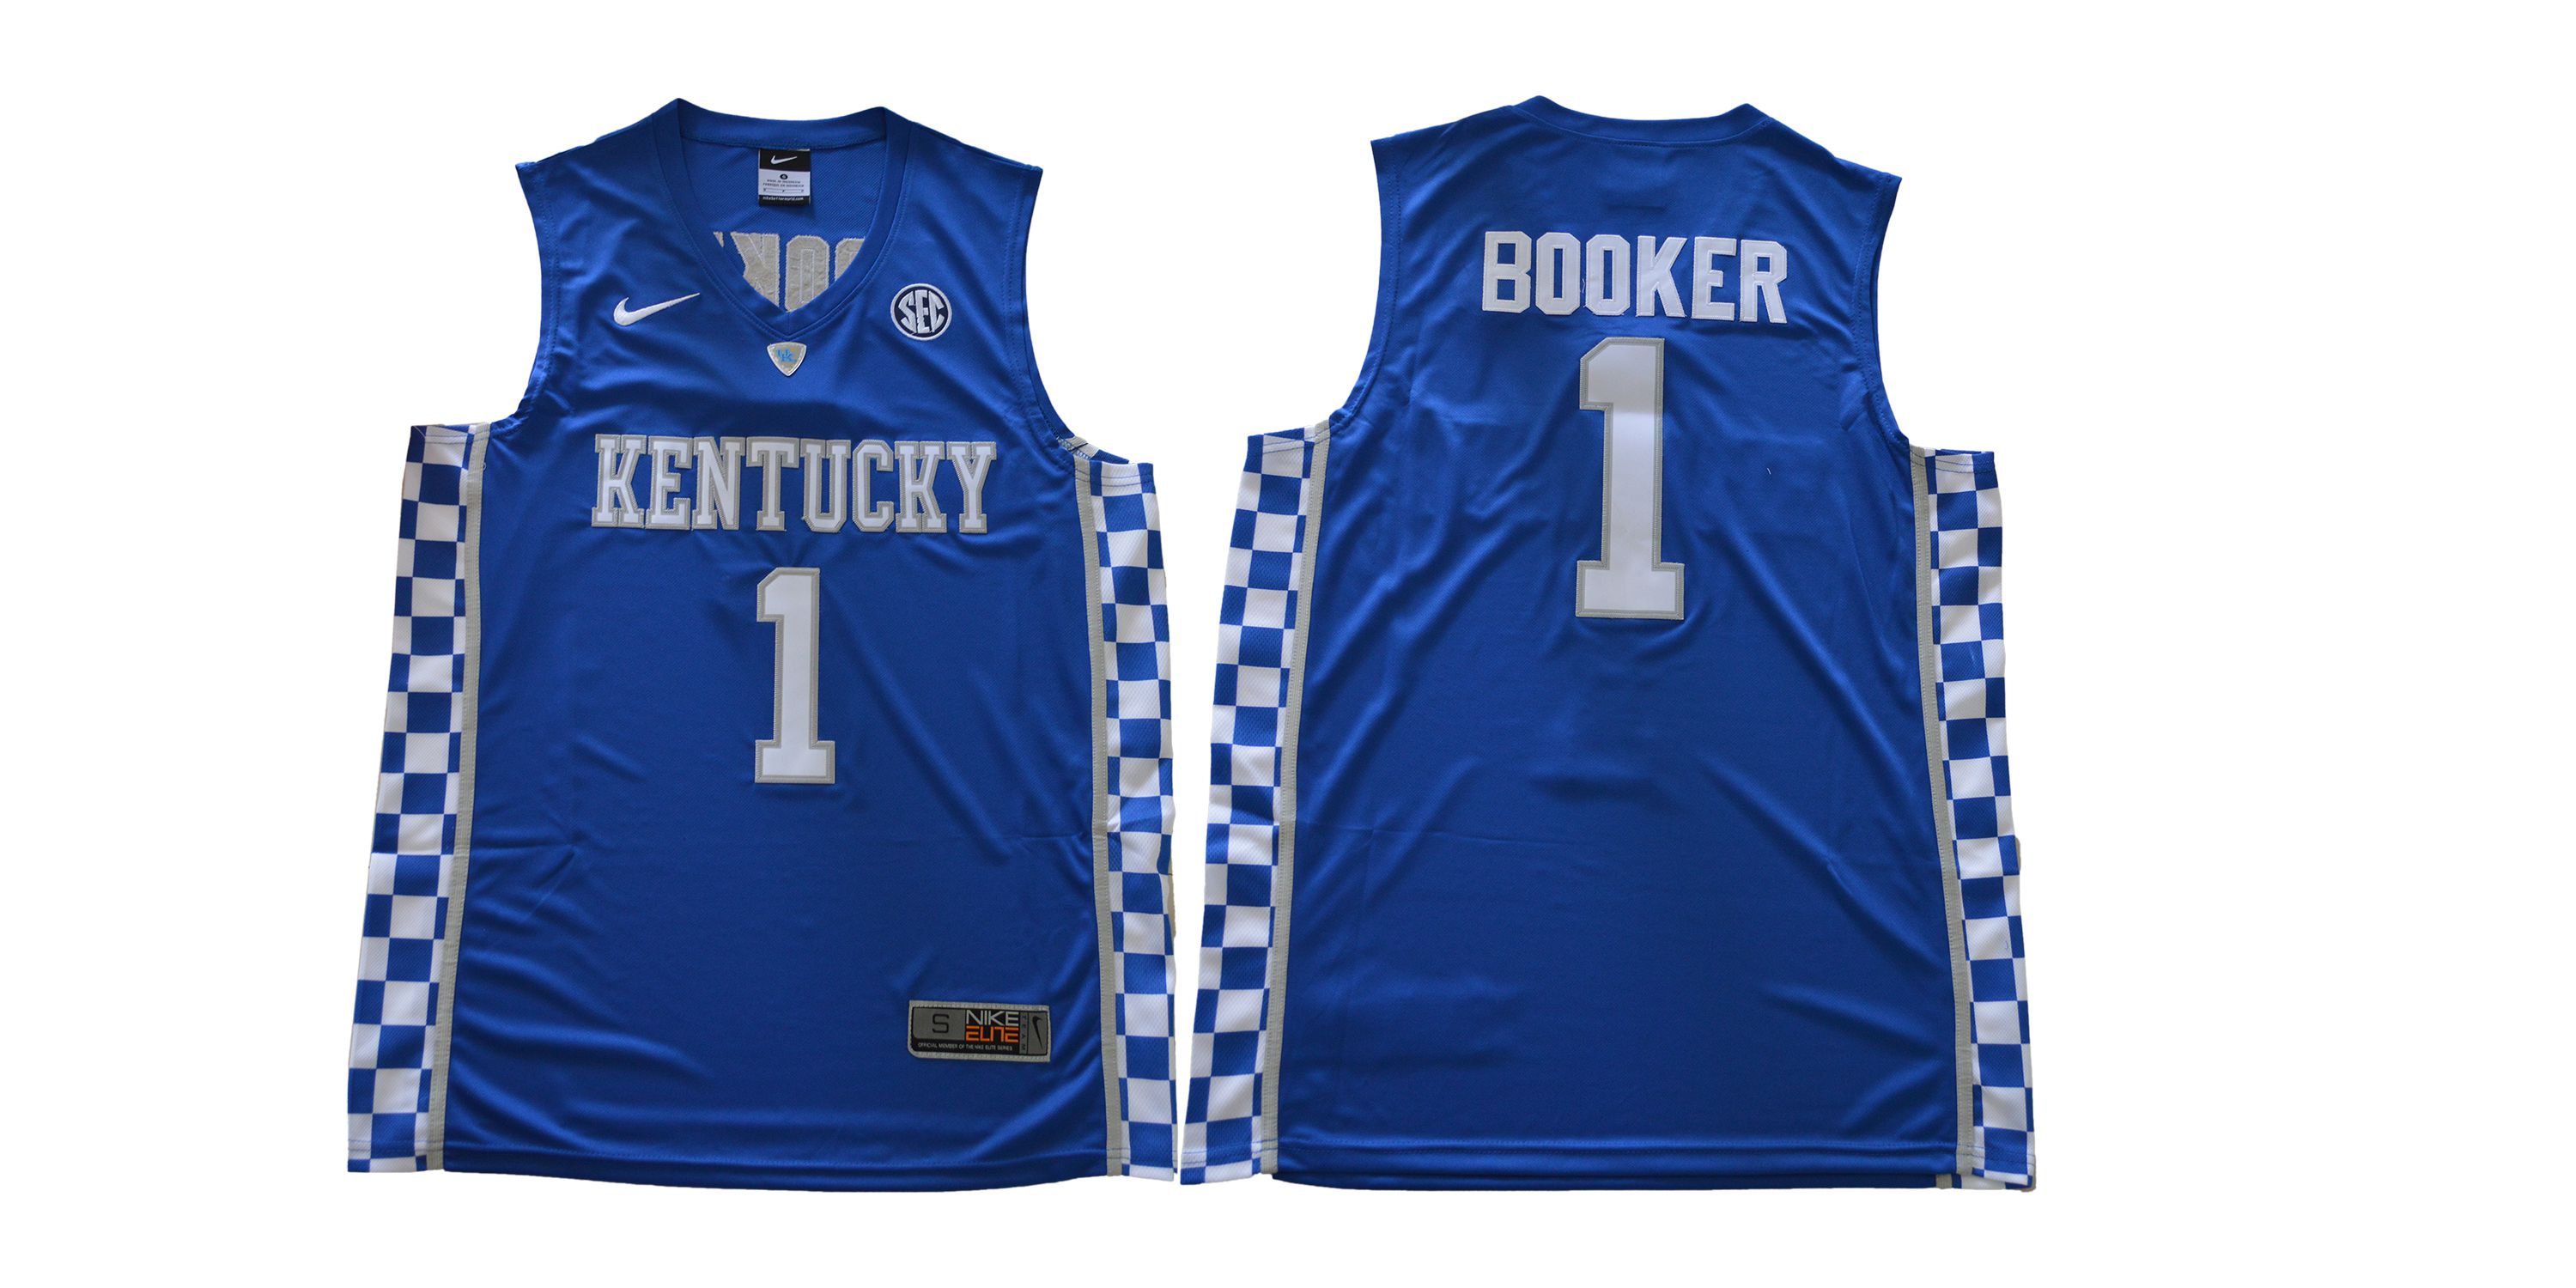 Men Kentucky Wildcats 1 Booker Blue NBA NCAA Jerseys